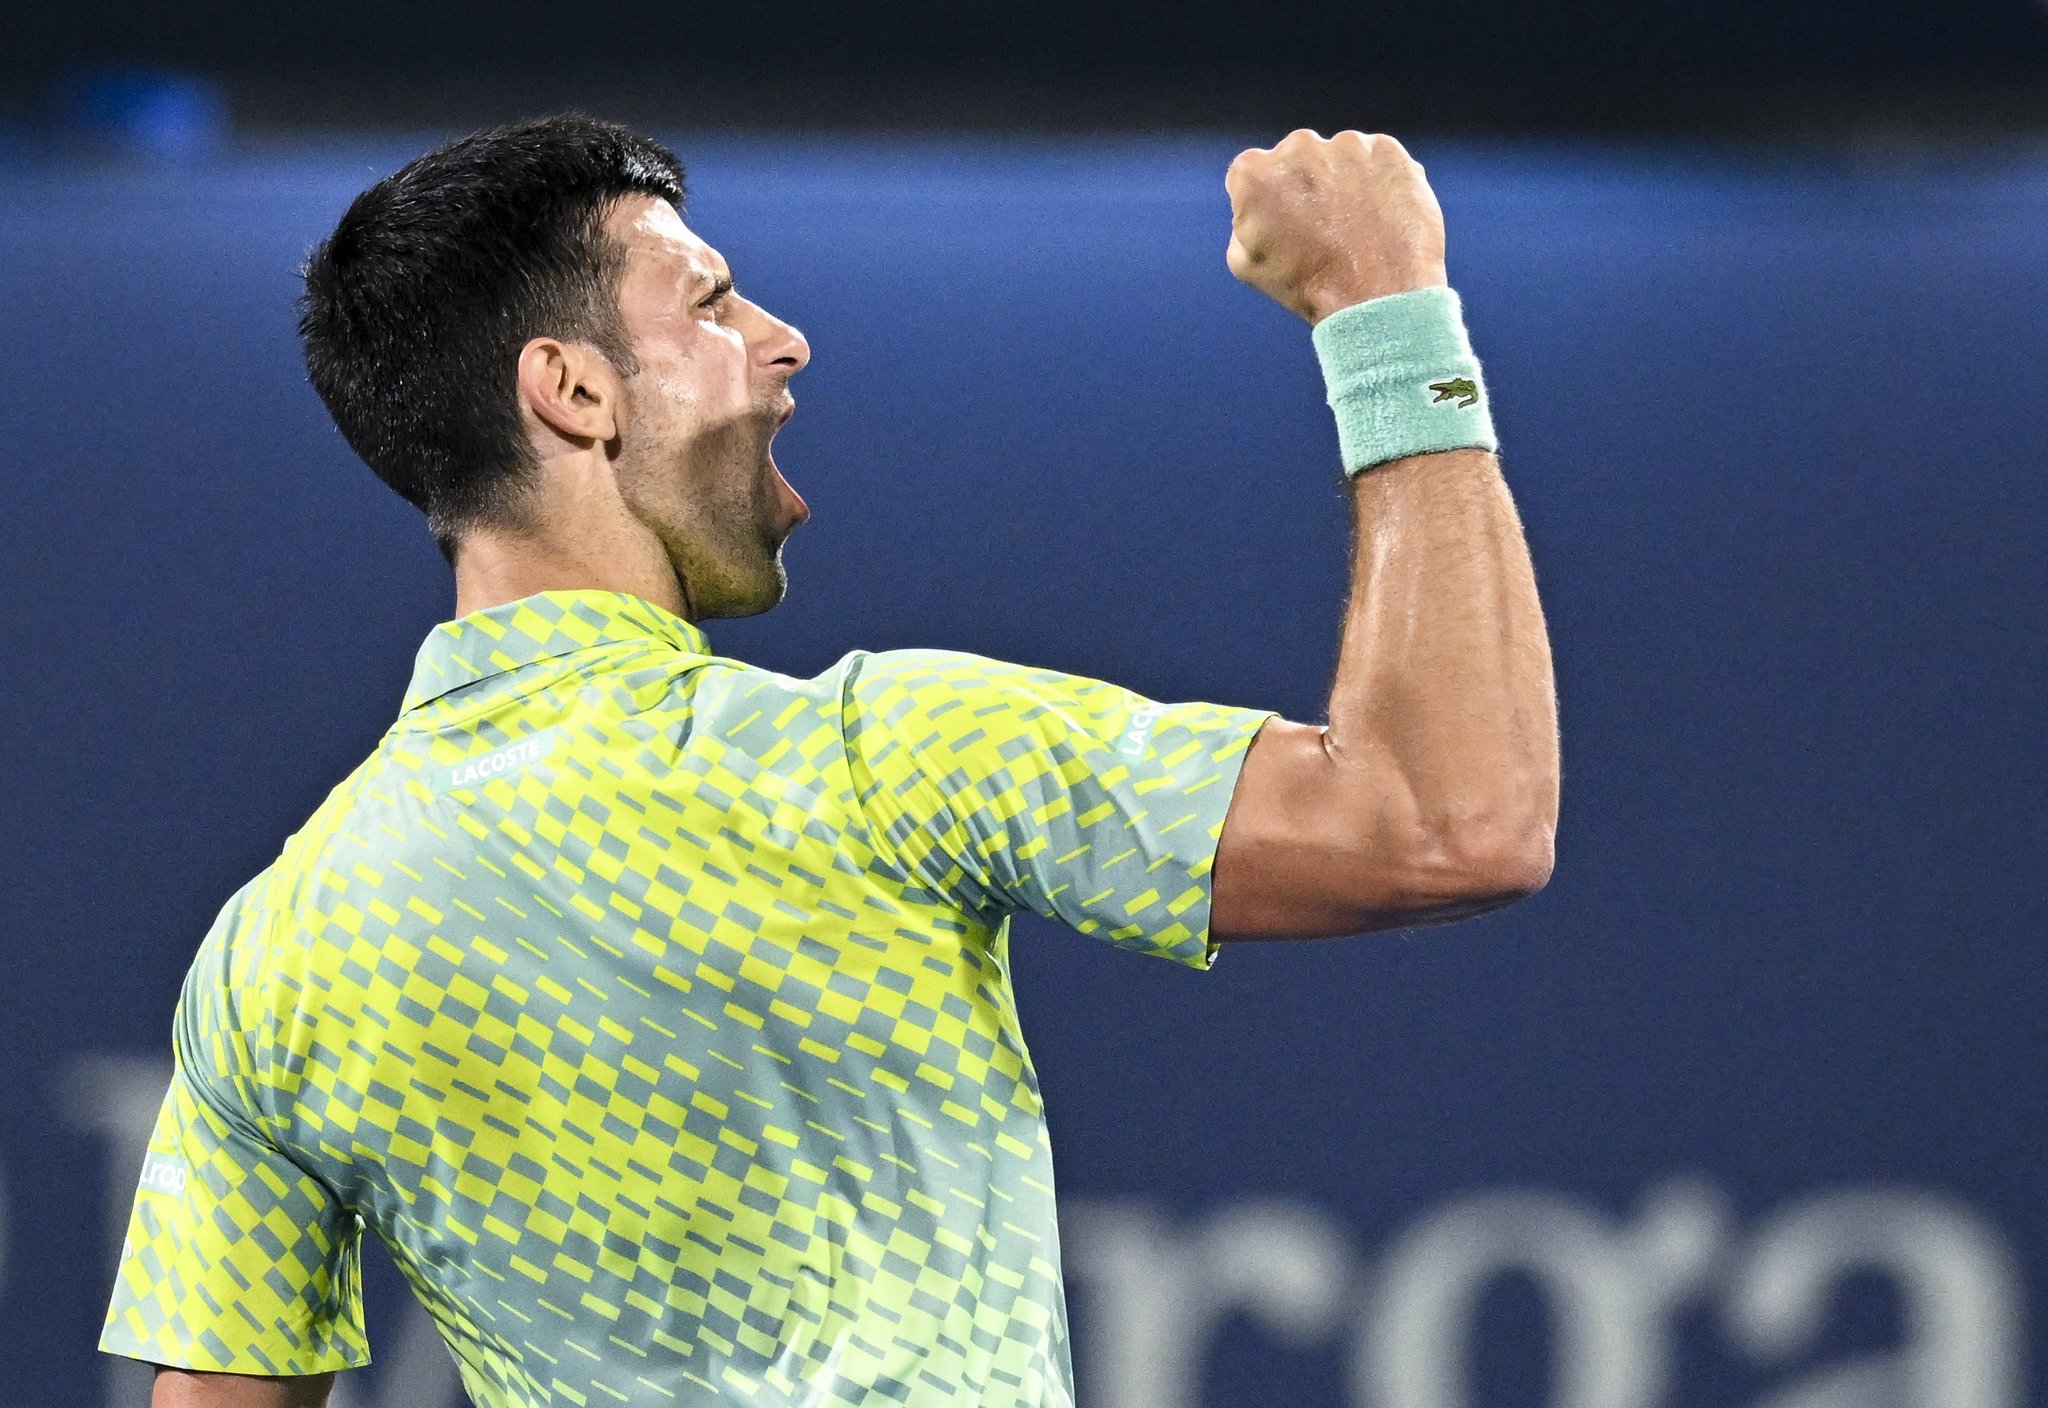 ATP 500 de Dubai: Veja como ficaram as quartas de final · Revista TÊNIS